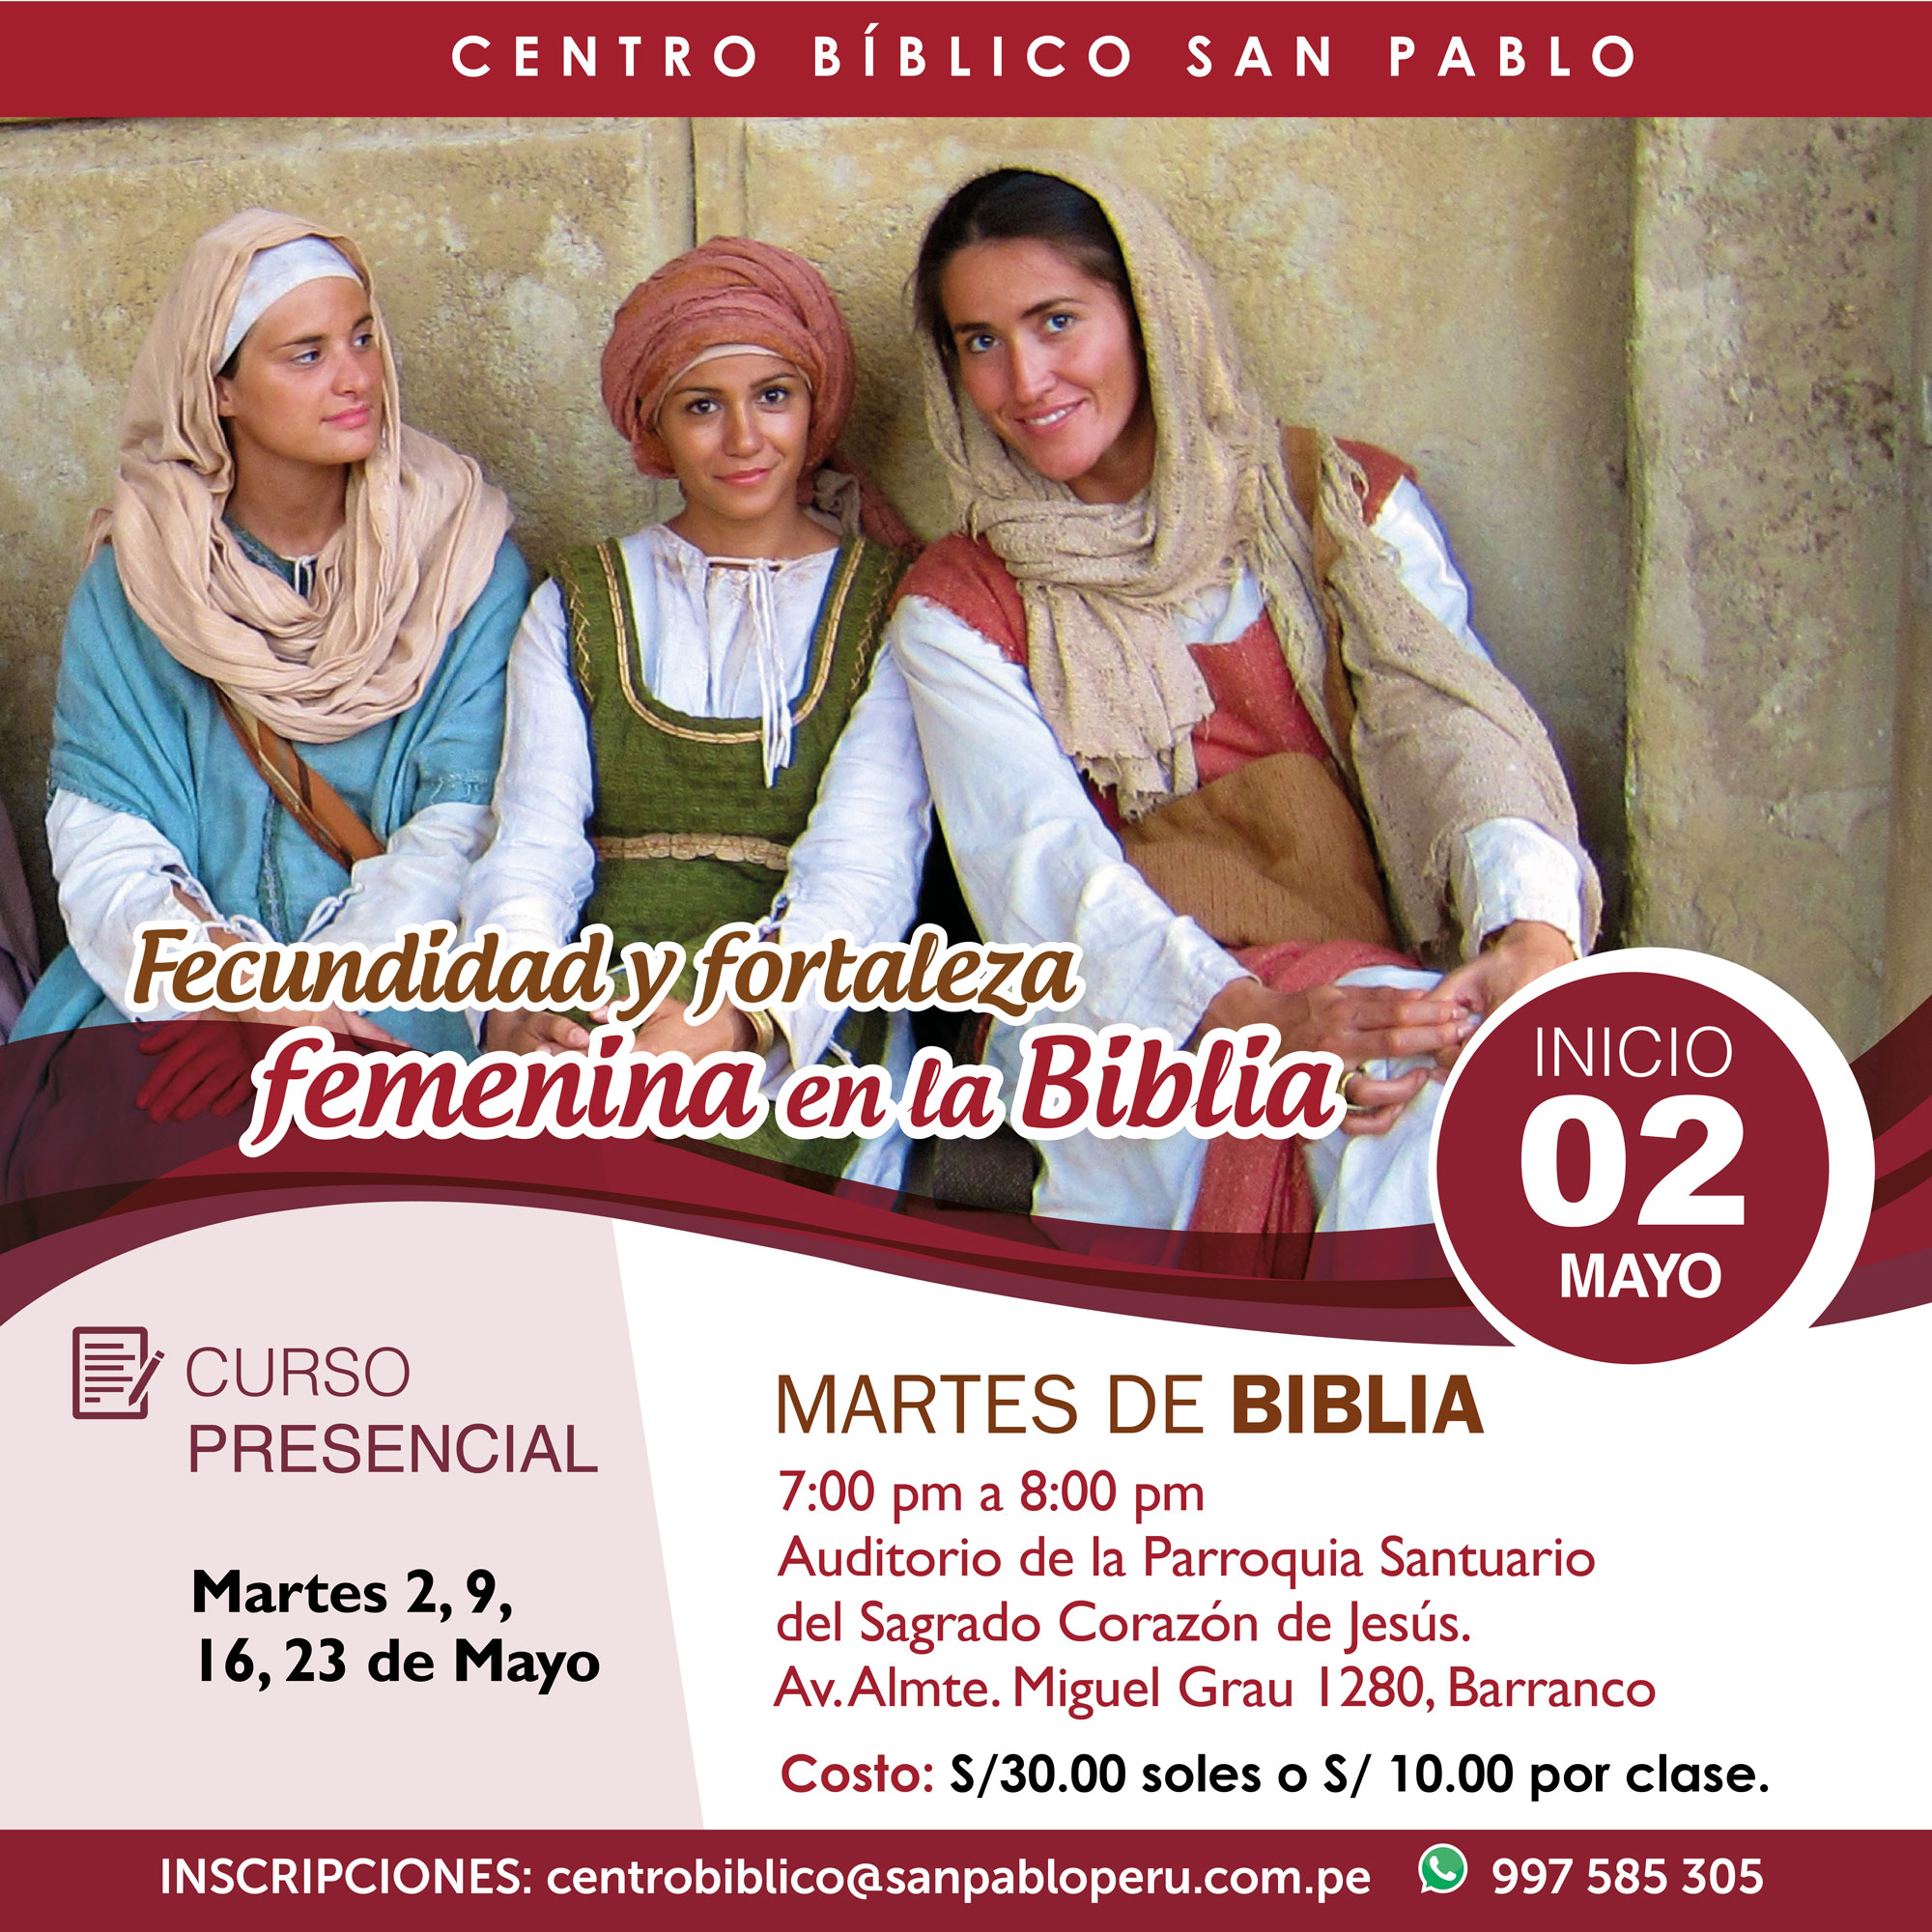 Curso Presencial: “Fecundidad y fortaleza femenina en la Biblia”